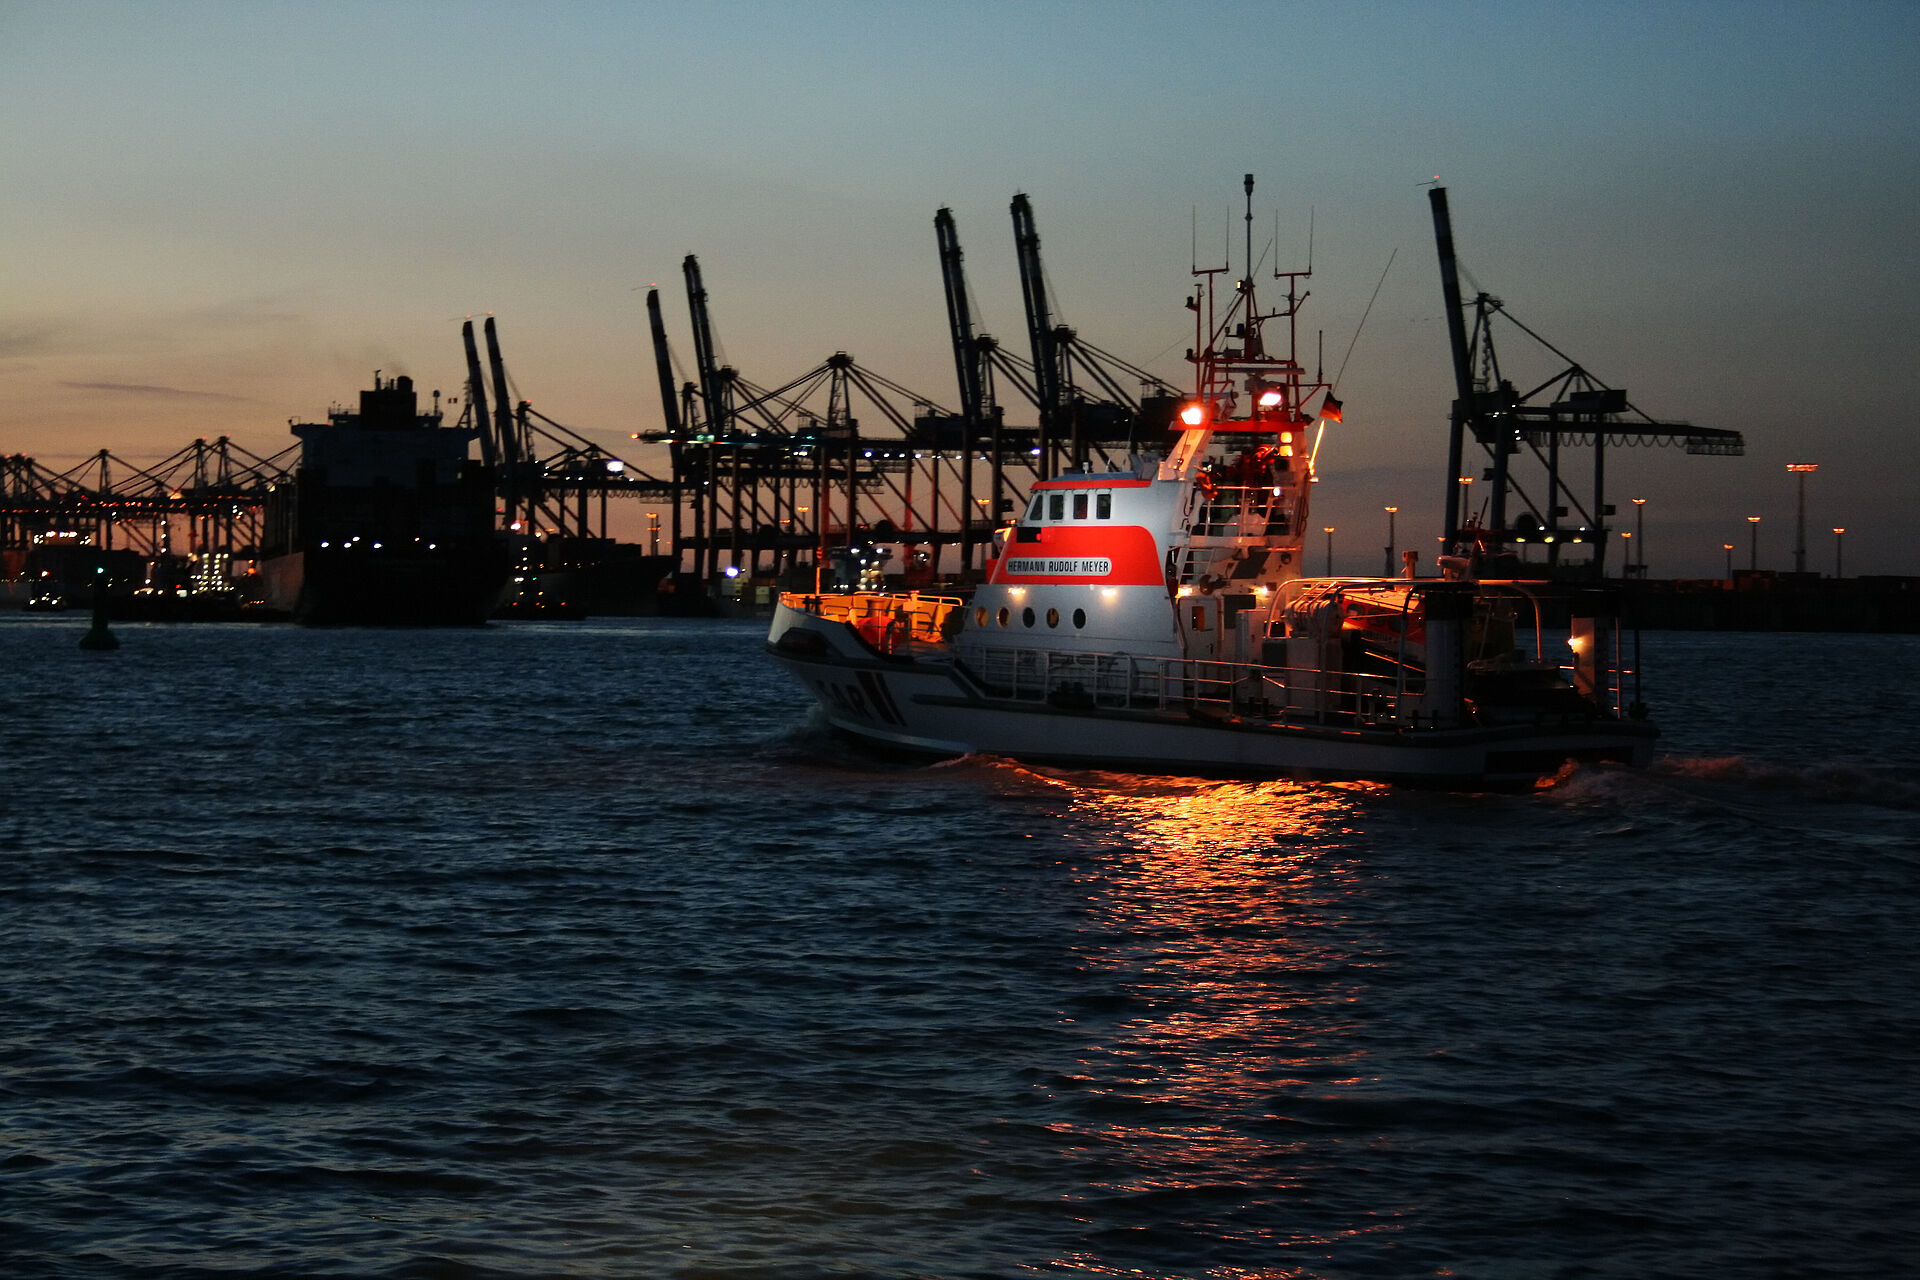 Nächtliche Suche nach Person über Bord von Containerfrachter in der Wesermündung – Seenotretter und zahlreiche weitere Einheiten im Einsatz